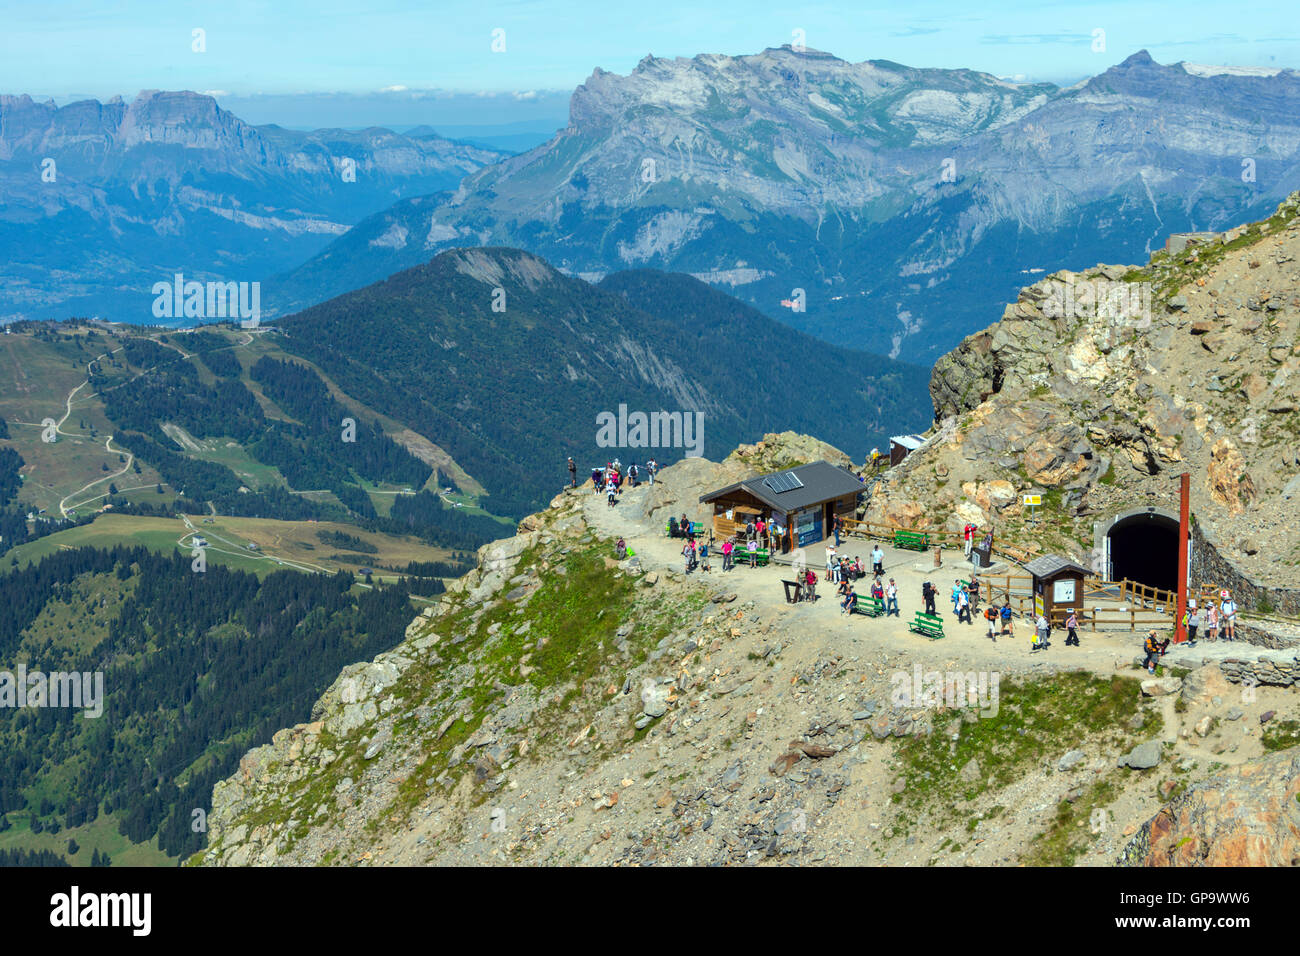 La Folla di escursionisti, alpinisti e turisti presso il Nid d'Aigle, Mont Blanc Tram, Chamonix, Francia Foto Stock